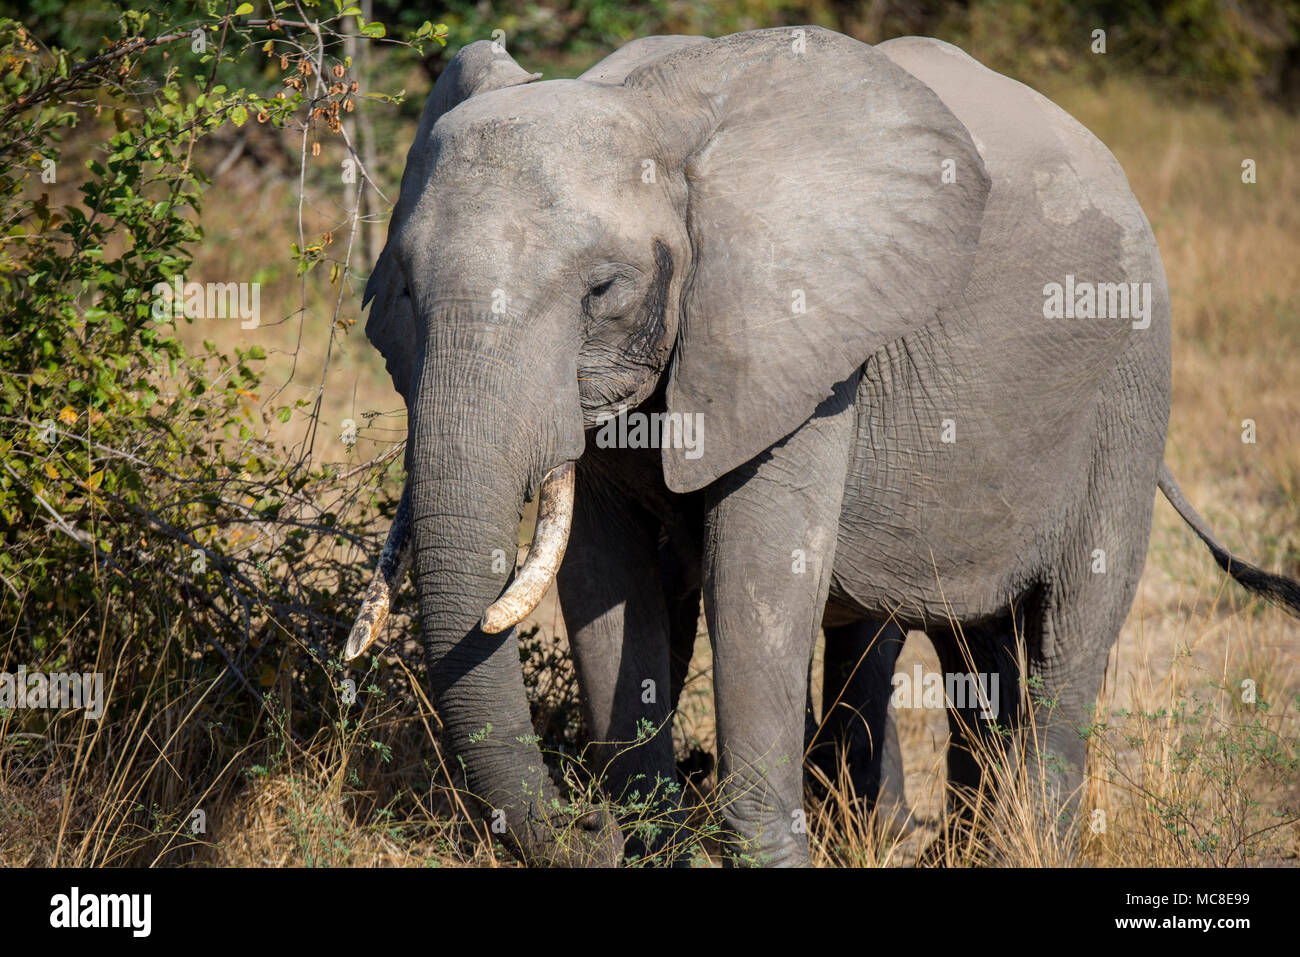 L'éléphant africain (Loxodonta africana) se nourrissant sur des arbres, dans la savane, Zambie Banque D'Images